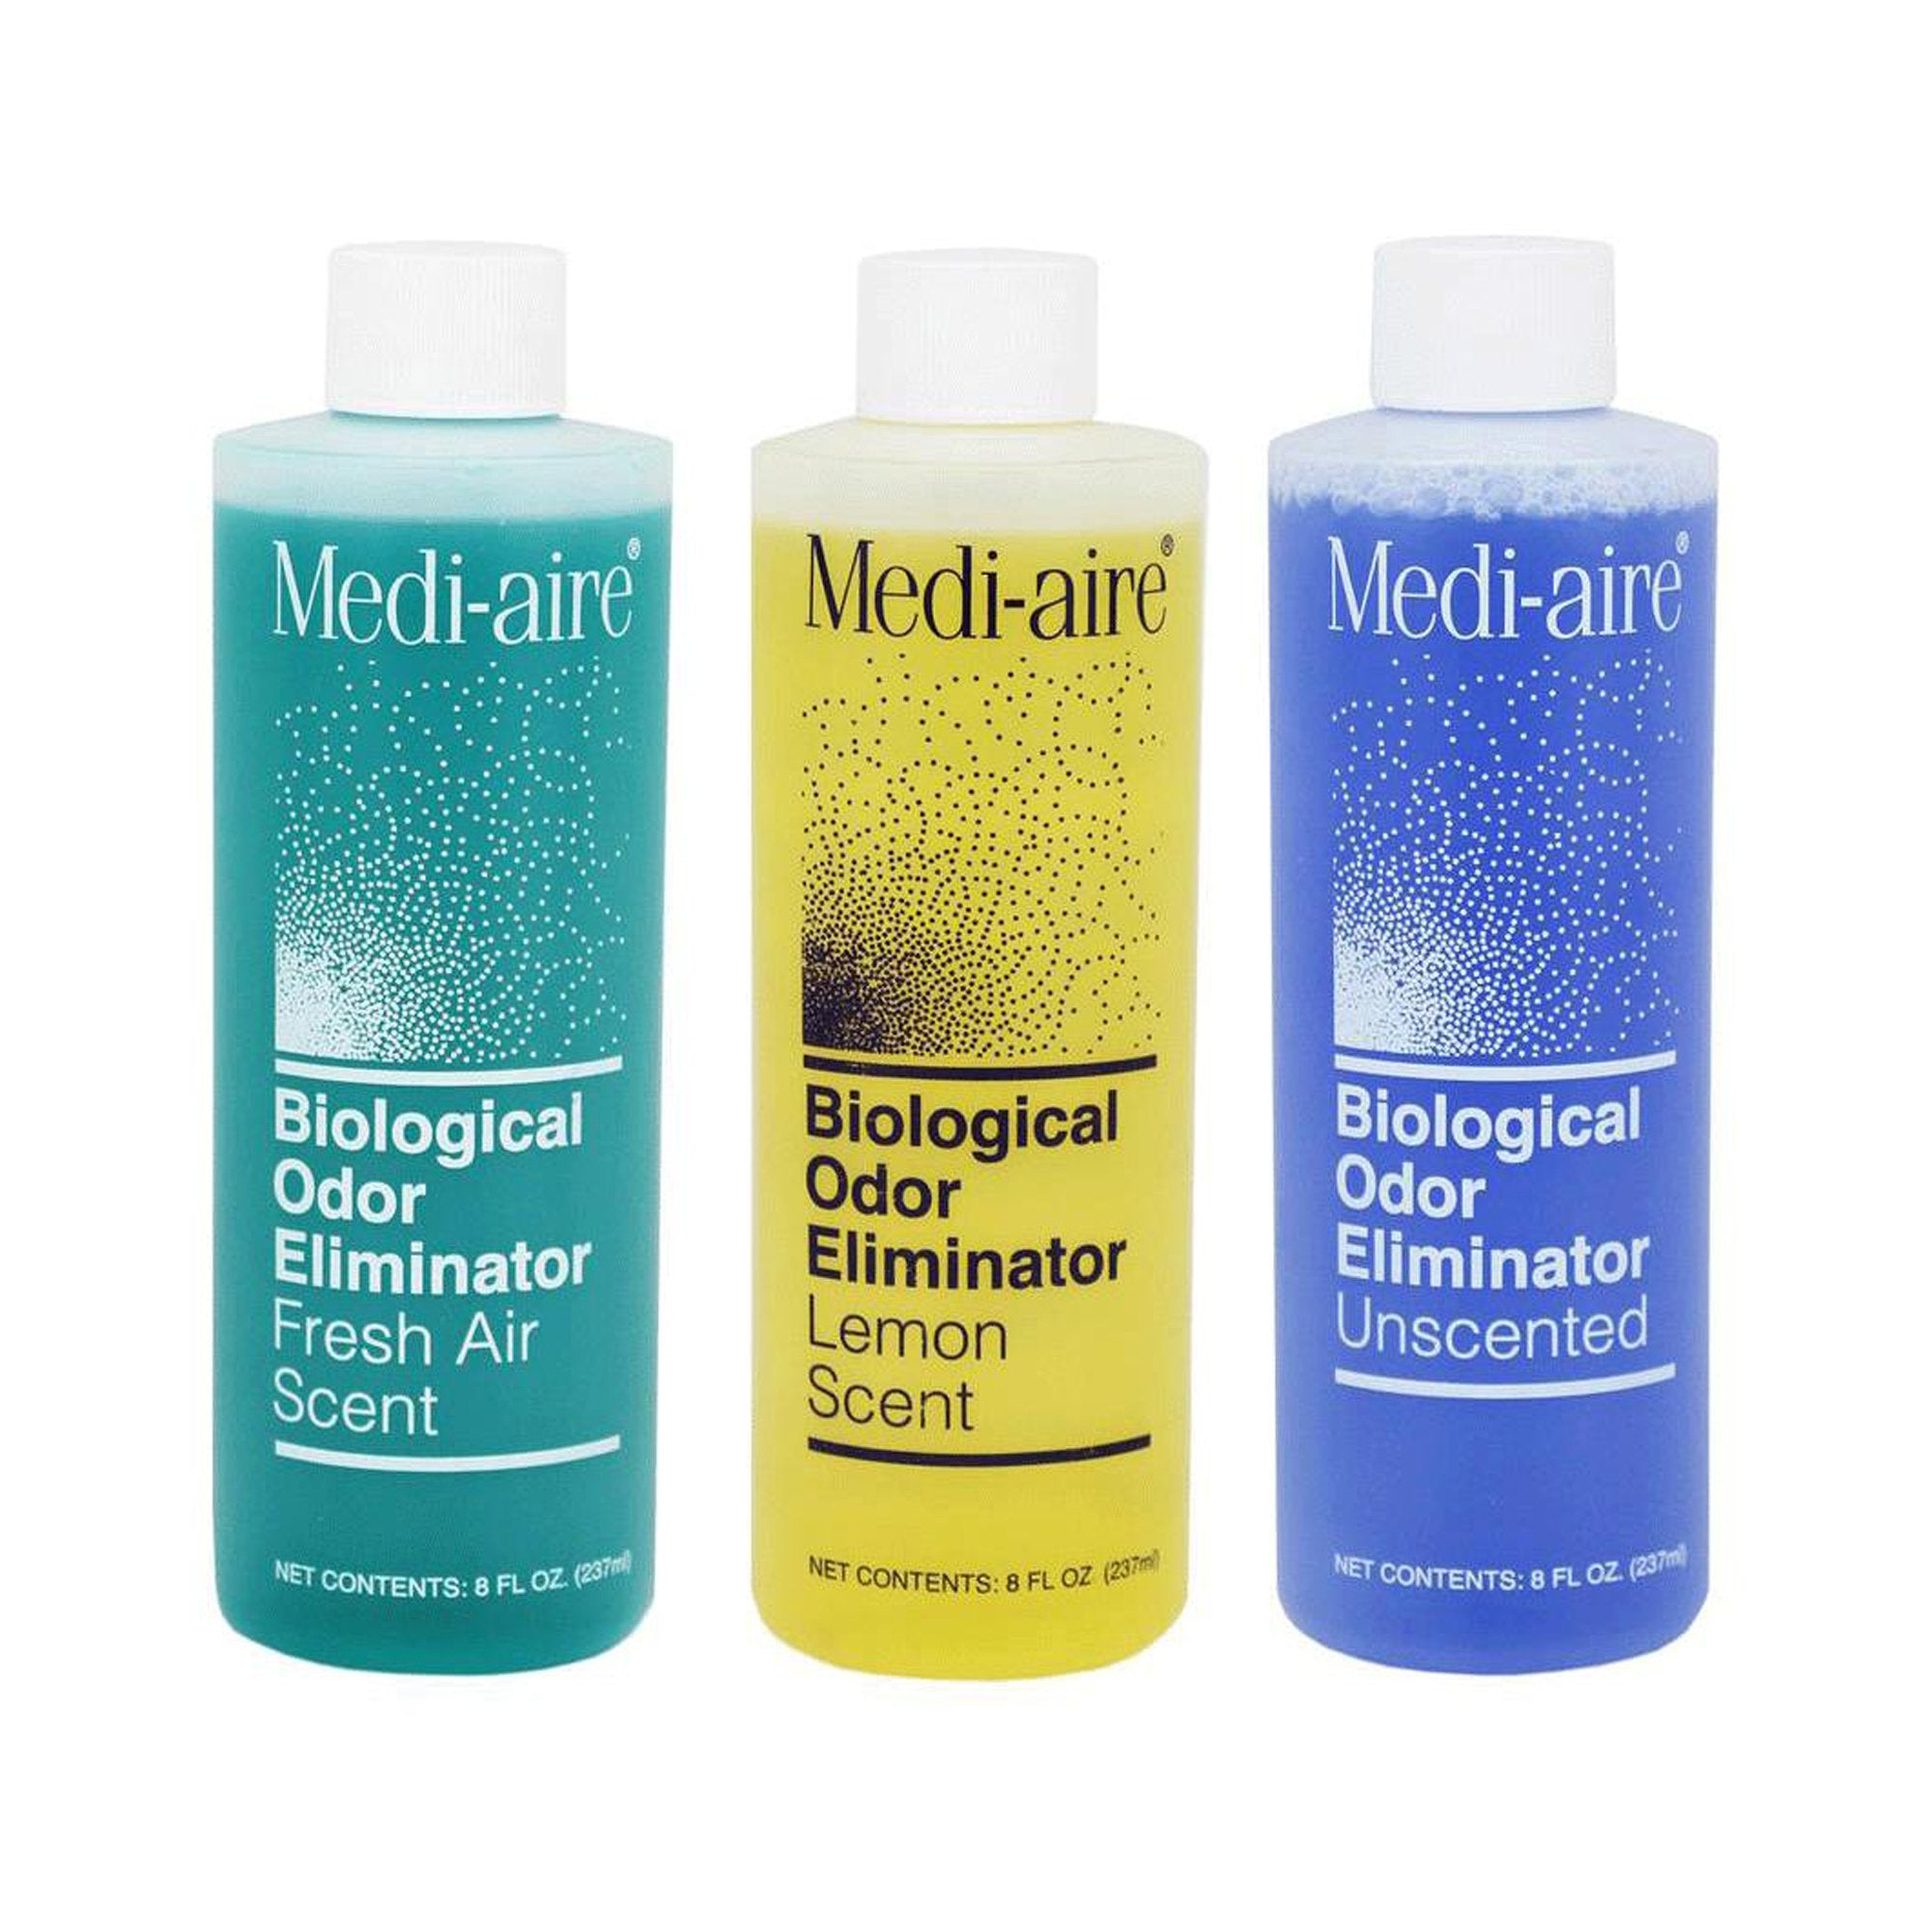 Deodorizer Medi-aire Biological Odor Eliminator Liquid 8 oz. Bottle Unscented